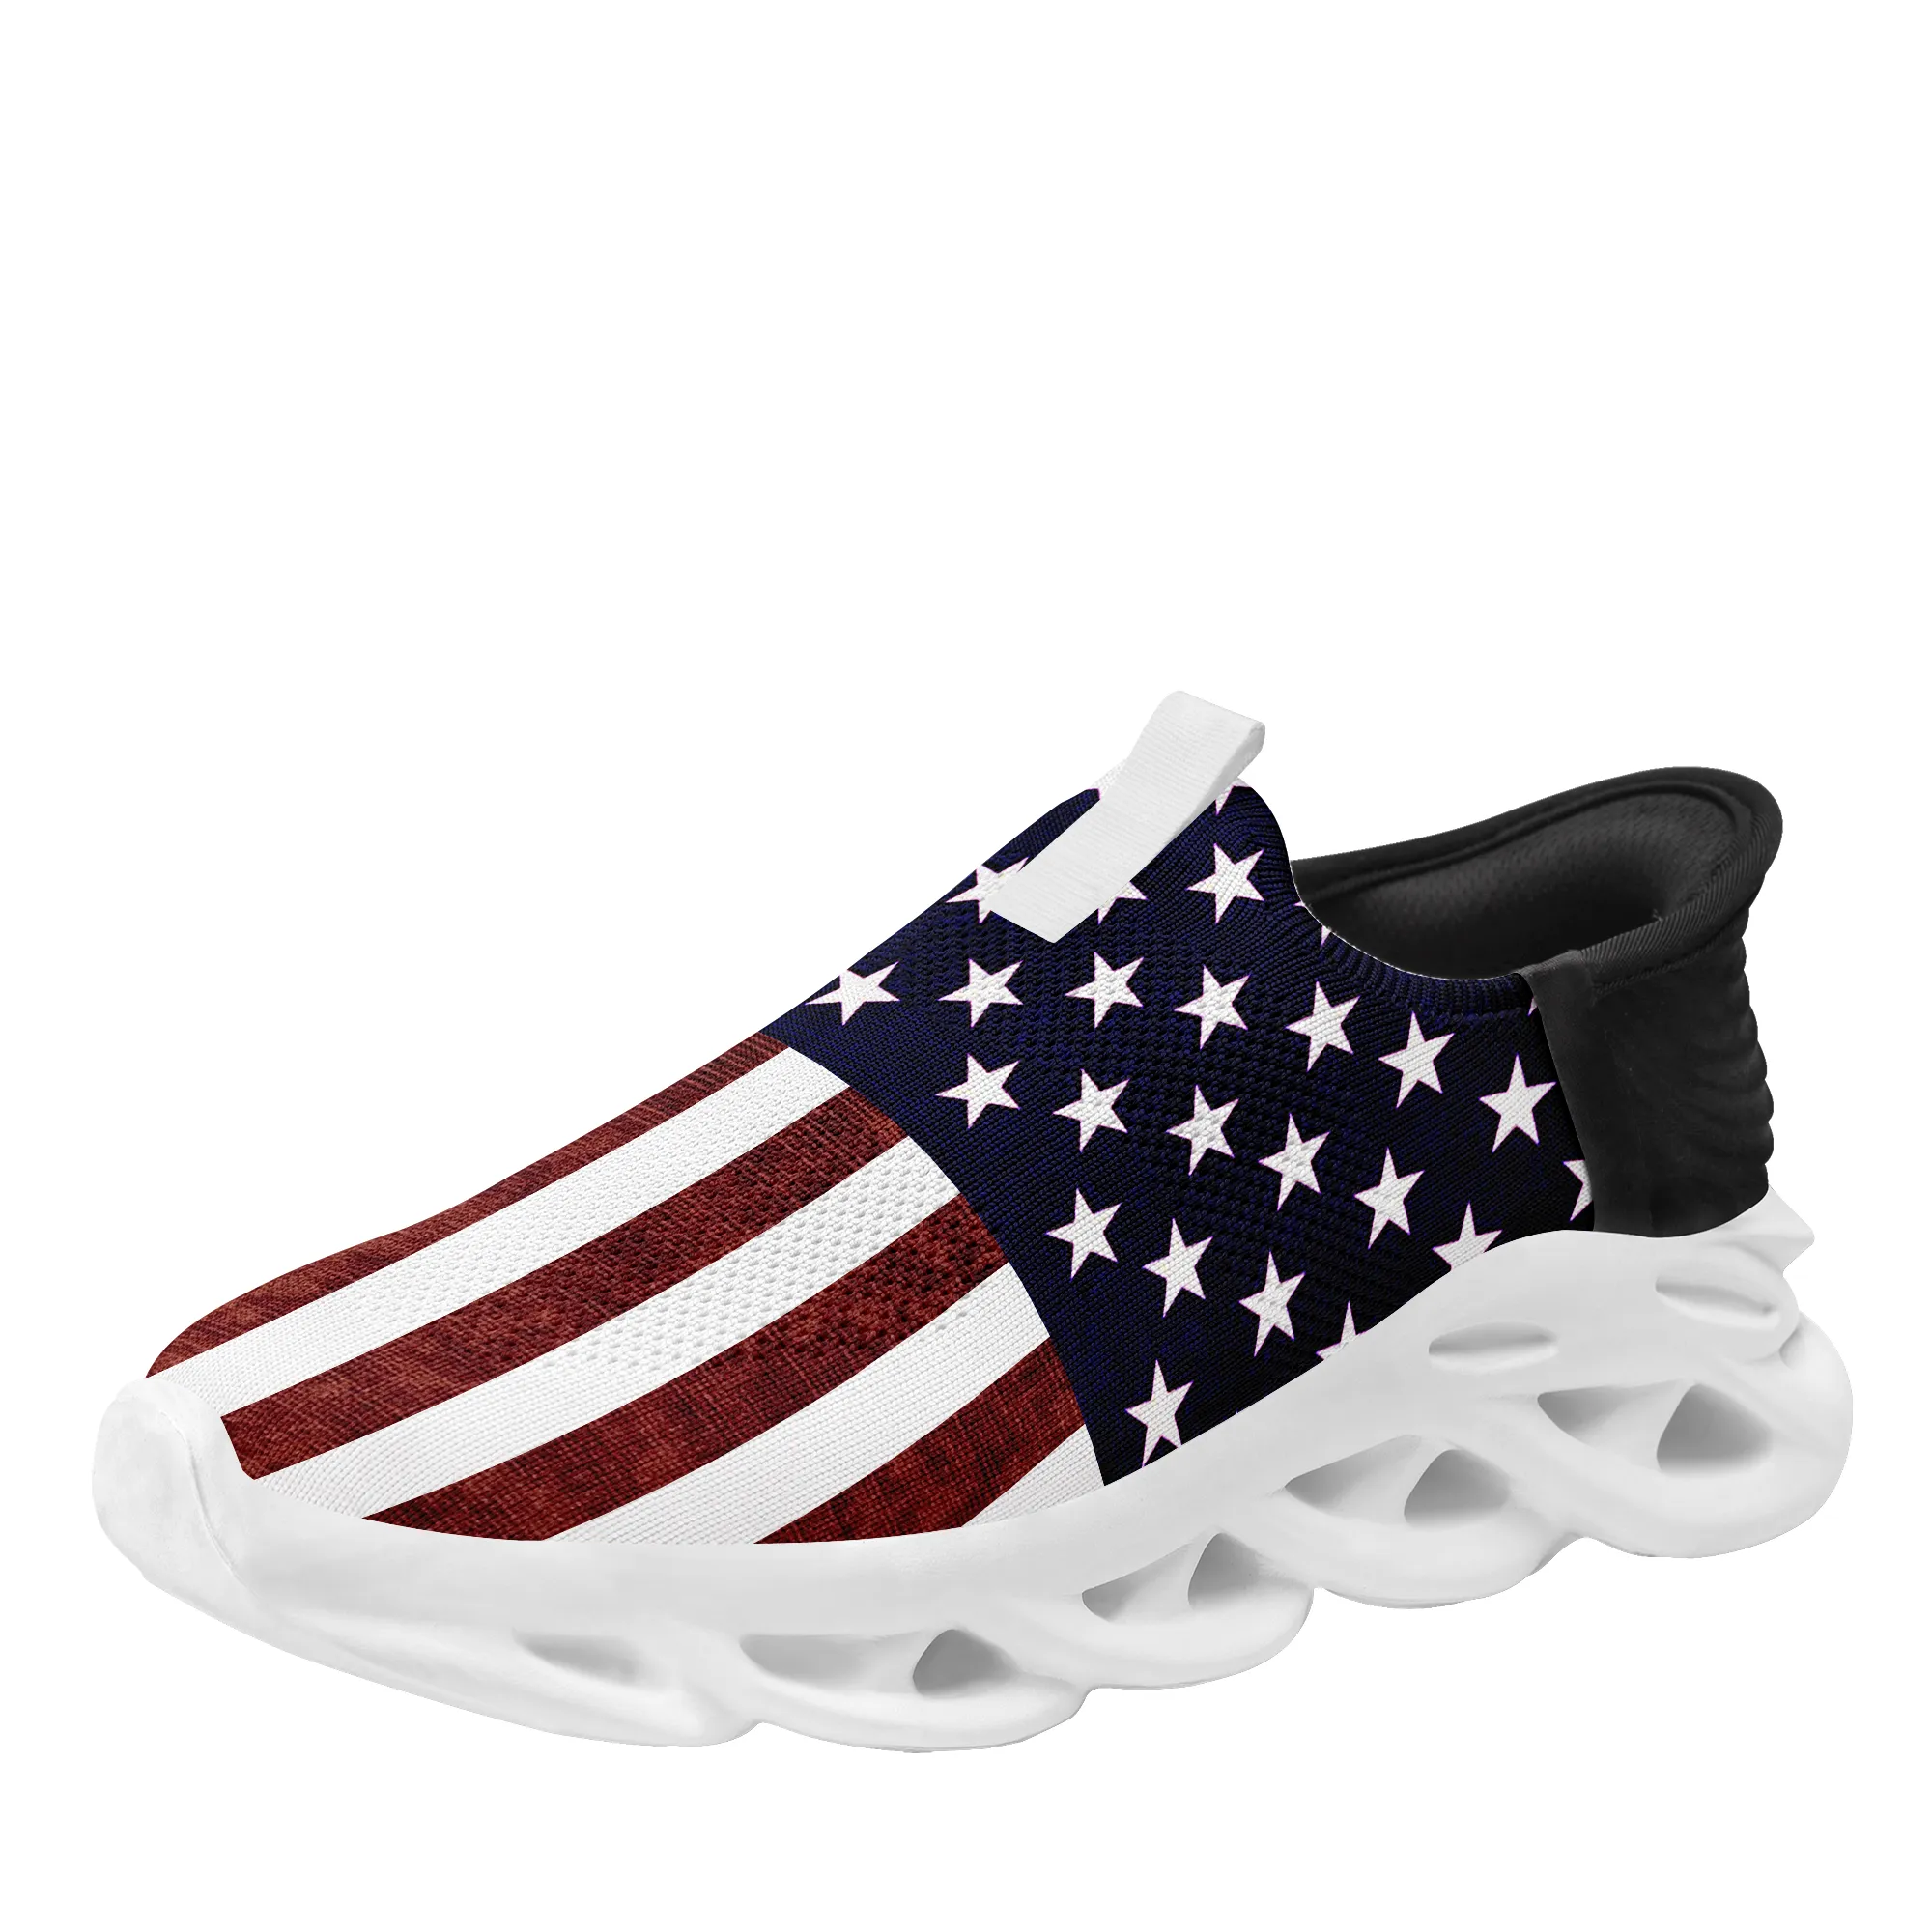 Coolcustomize Sneaker unisex personalizzata con stella bandiera nazionale USA personalizzata slip patriottico americano su scarpe sportive da donna da uomo leggere da corsa da tennis MS che camminano